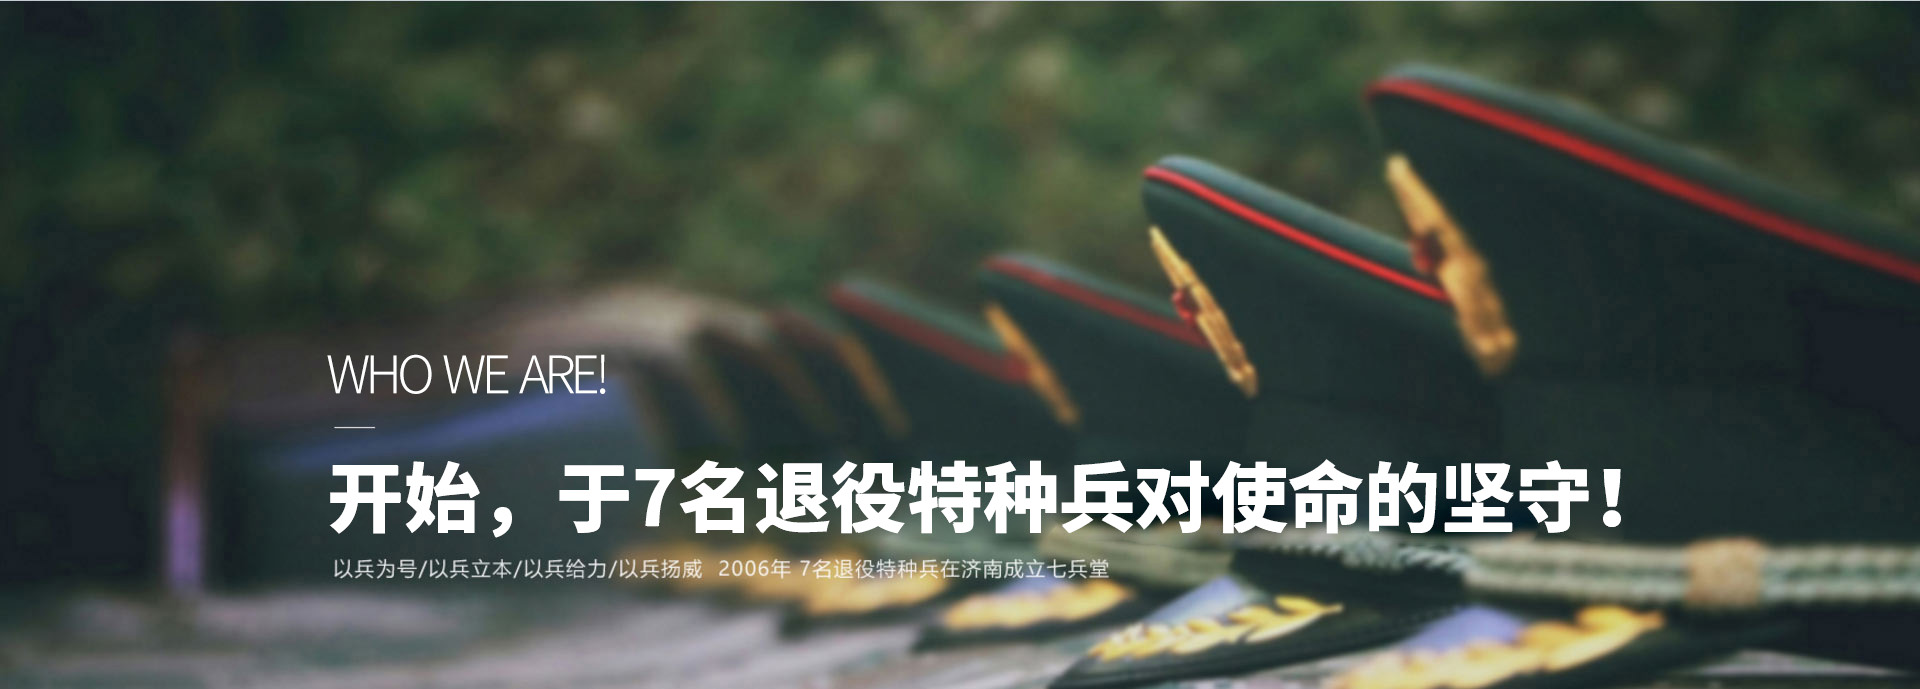 中国七兵堂保安公司国际集团官方网站